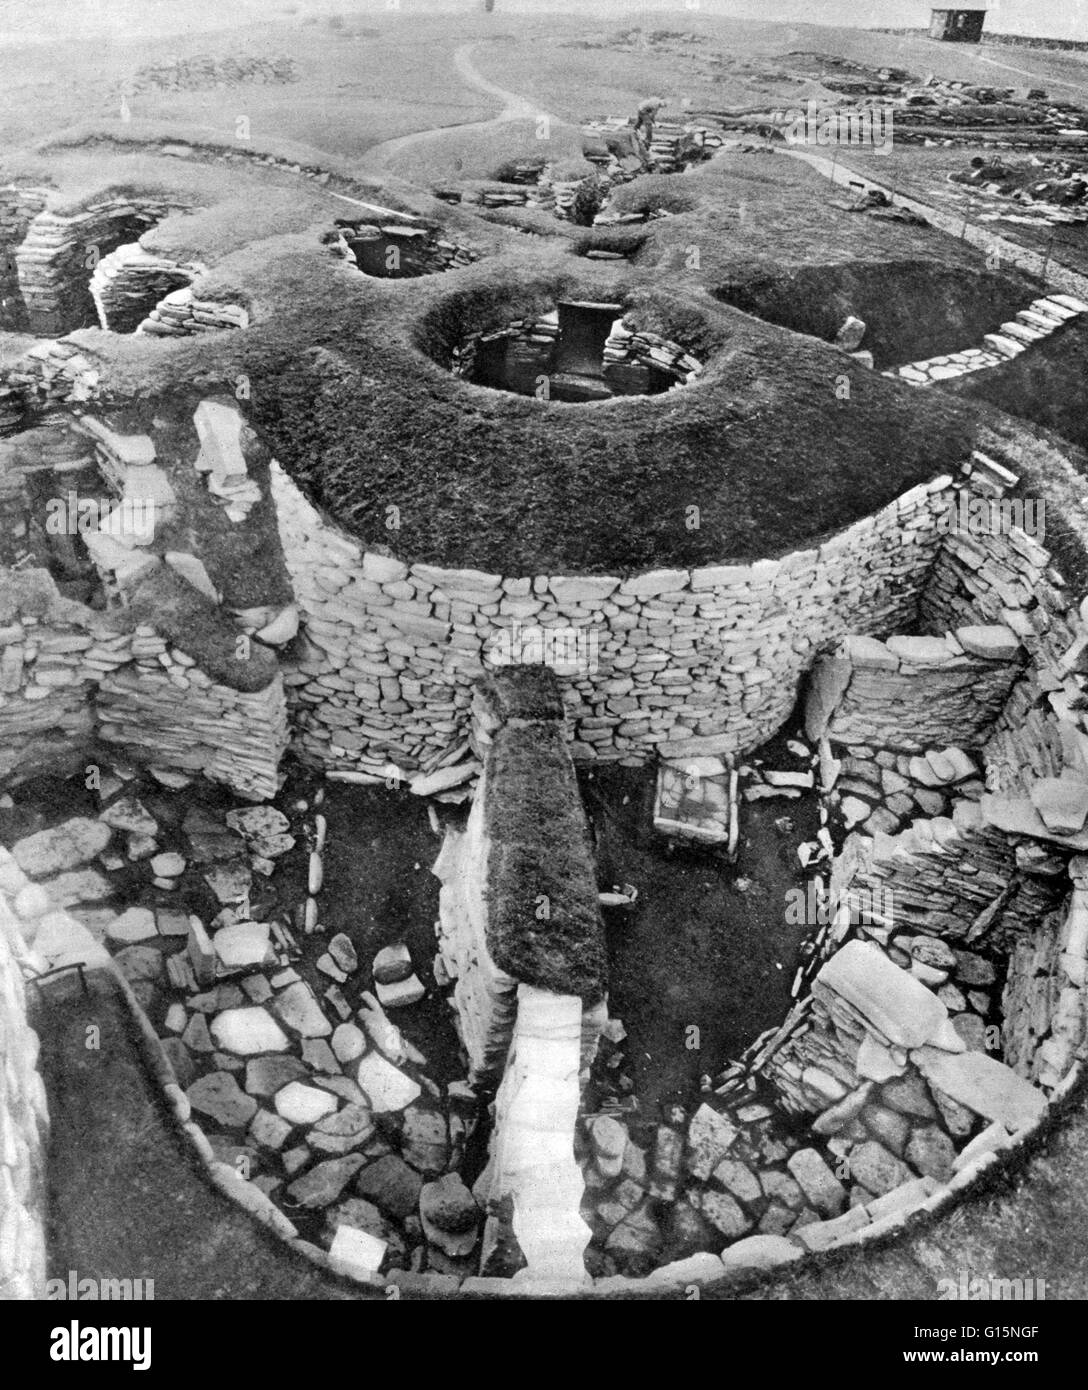 Jarlshof est le plus célèbre site archéologique préhistorique en Shetland. Il se trouve près de la pointe sud de la partie continentale de Shetland et est l'un des plus remarquables sites archéologiques jamais creusé dans les îles britanniques. Il contient des vestiges datant Banque D'Images